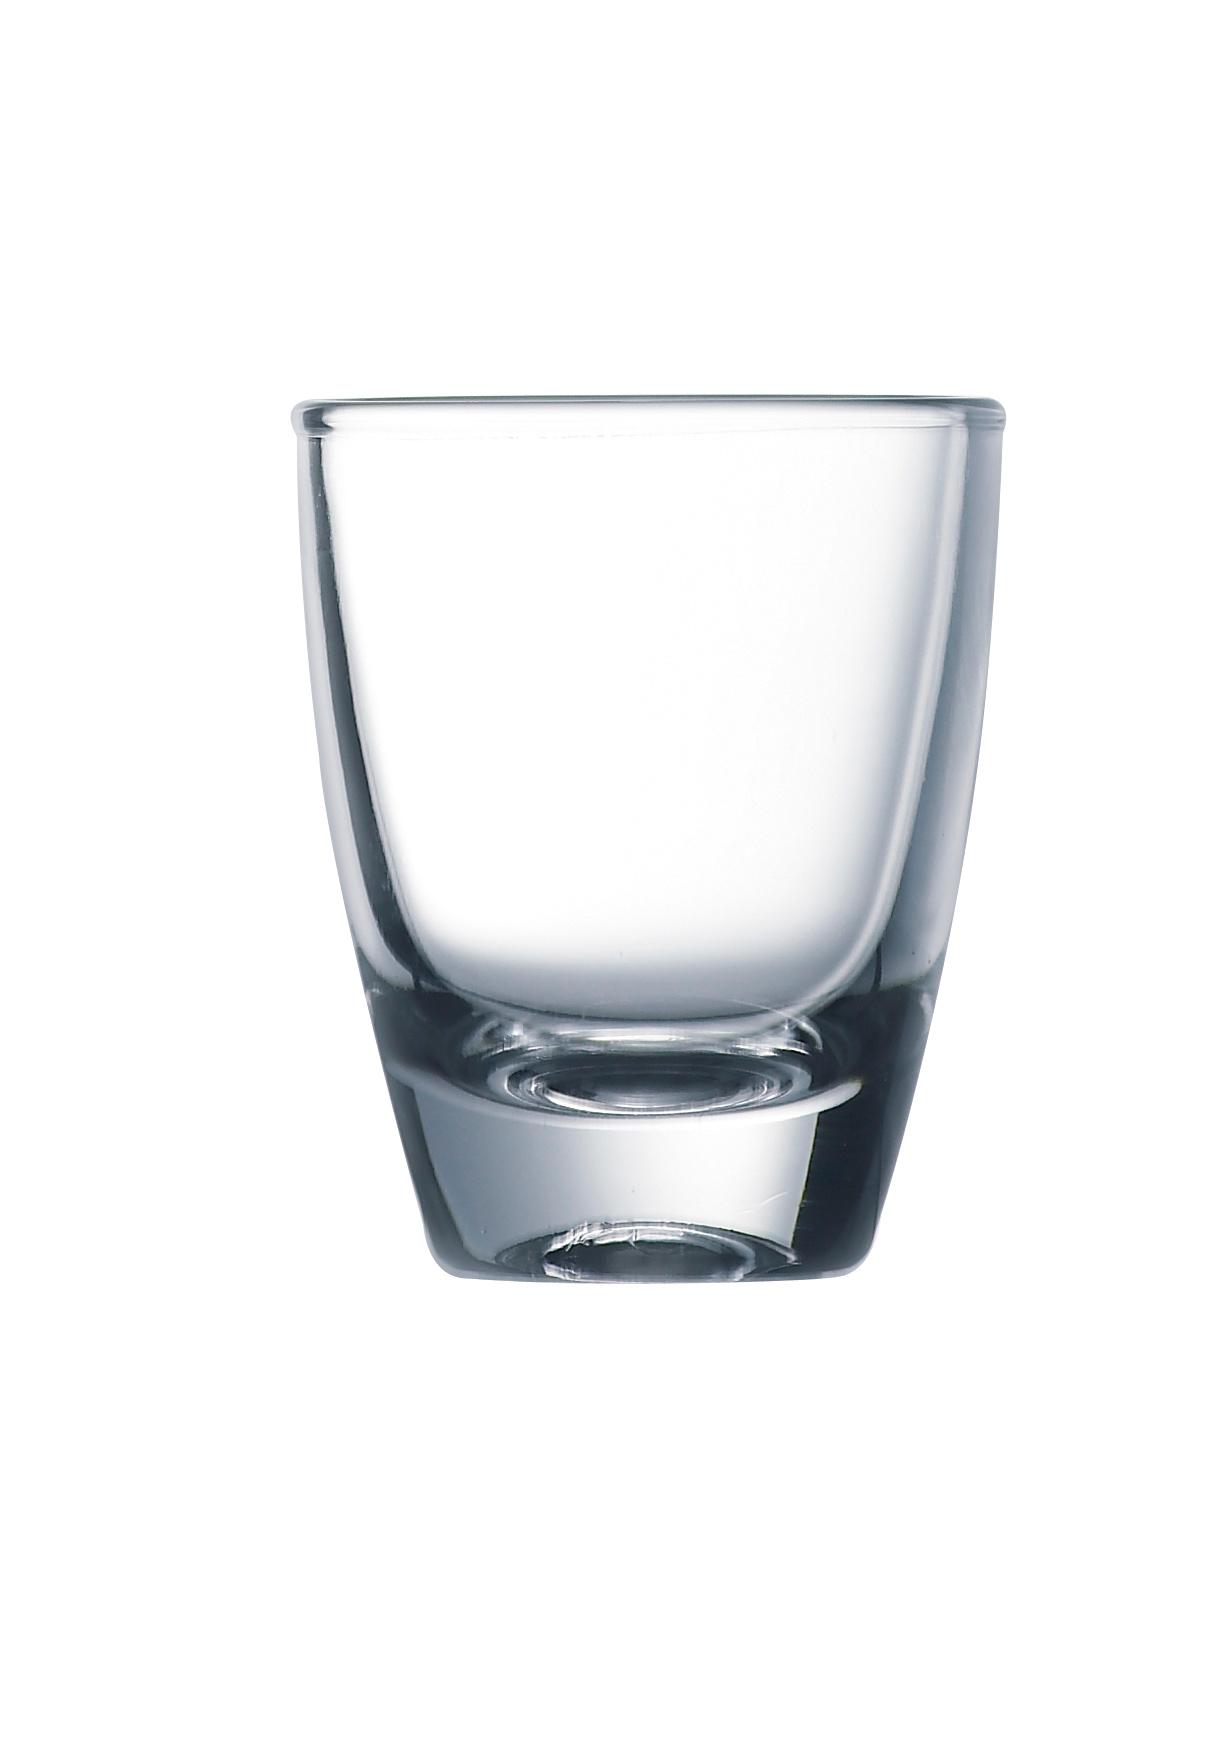 Gin shot glass, 30ml